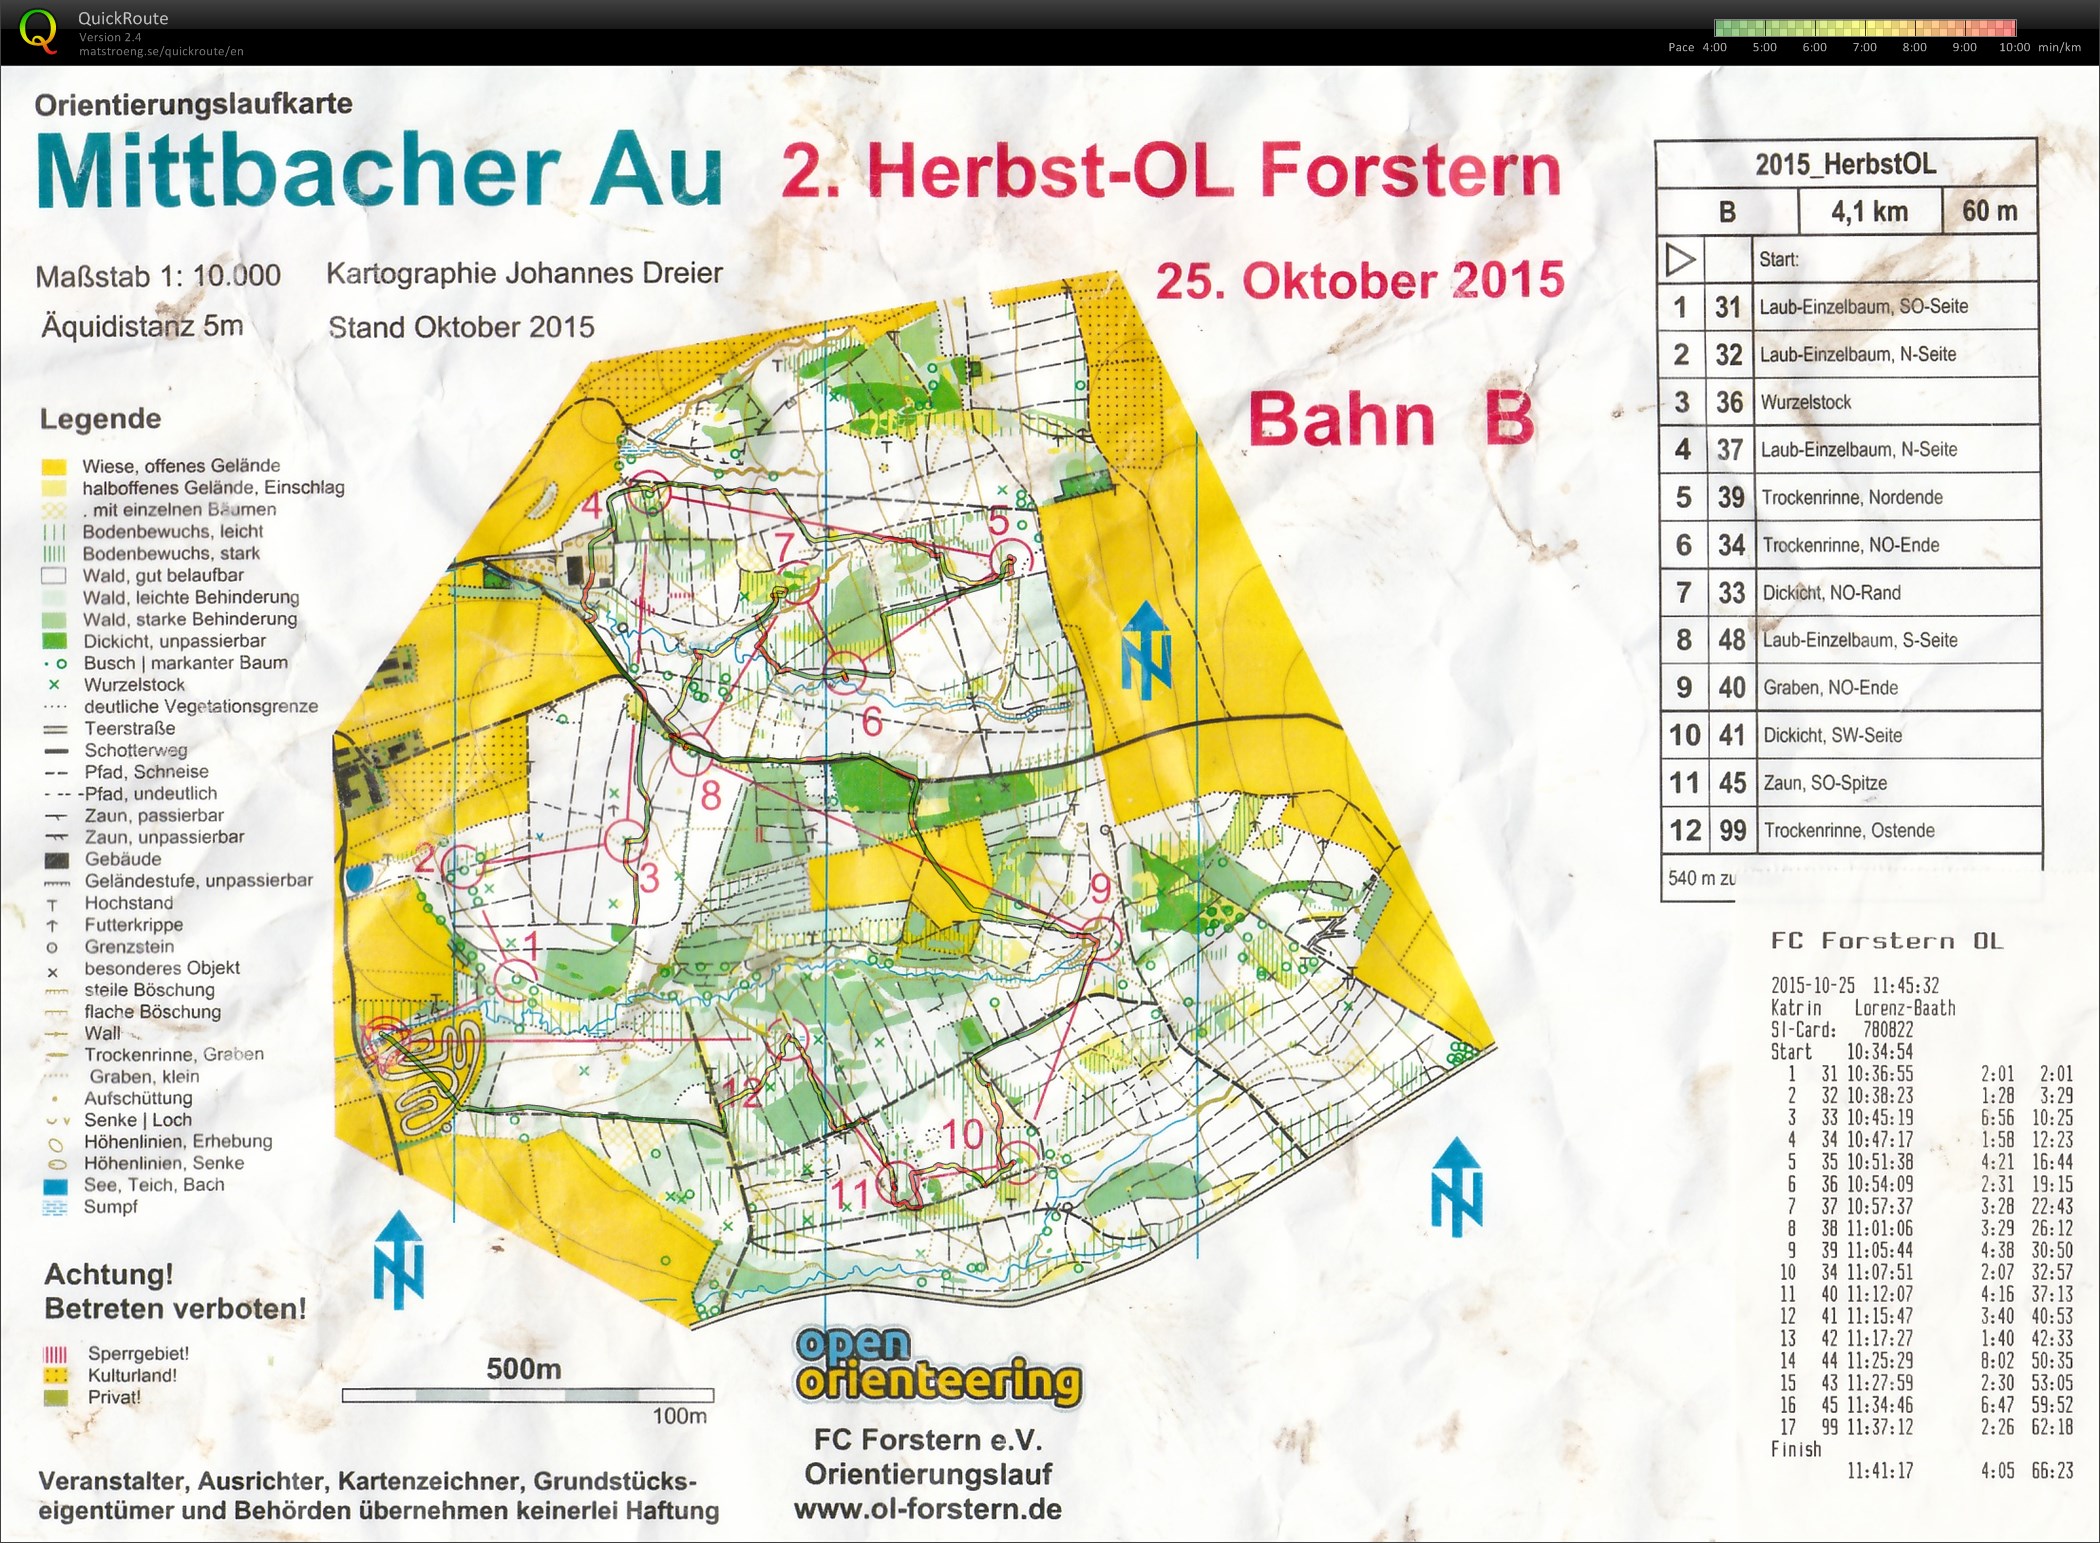 Herbst-OL Forstern (25-10-2015)